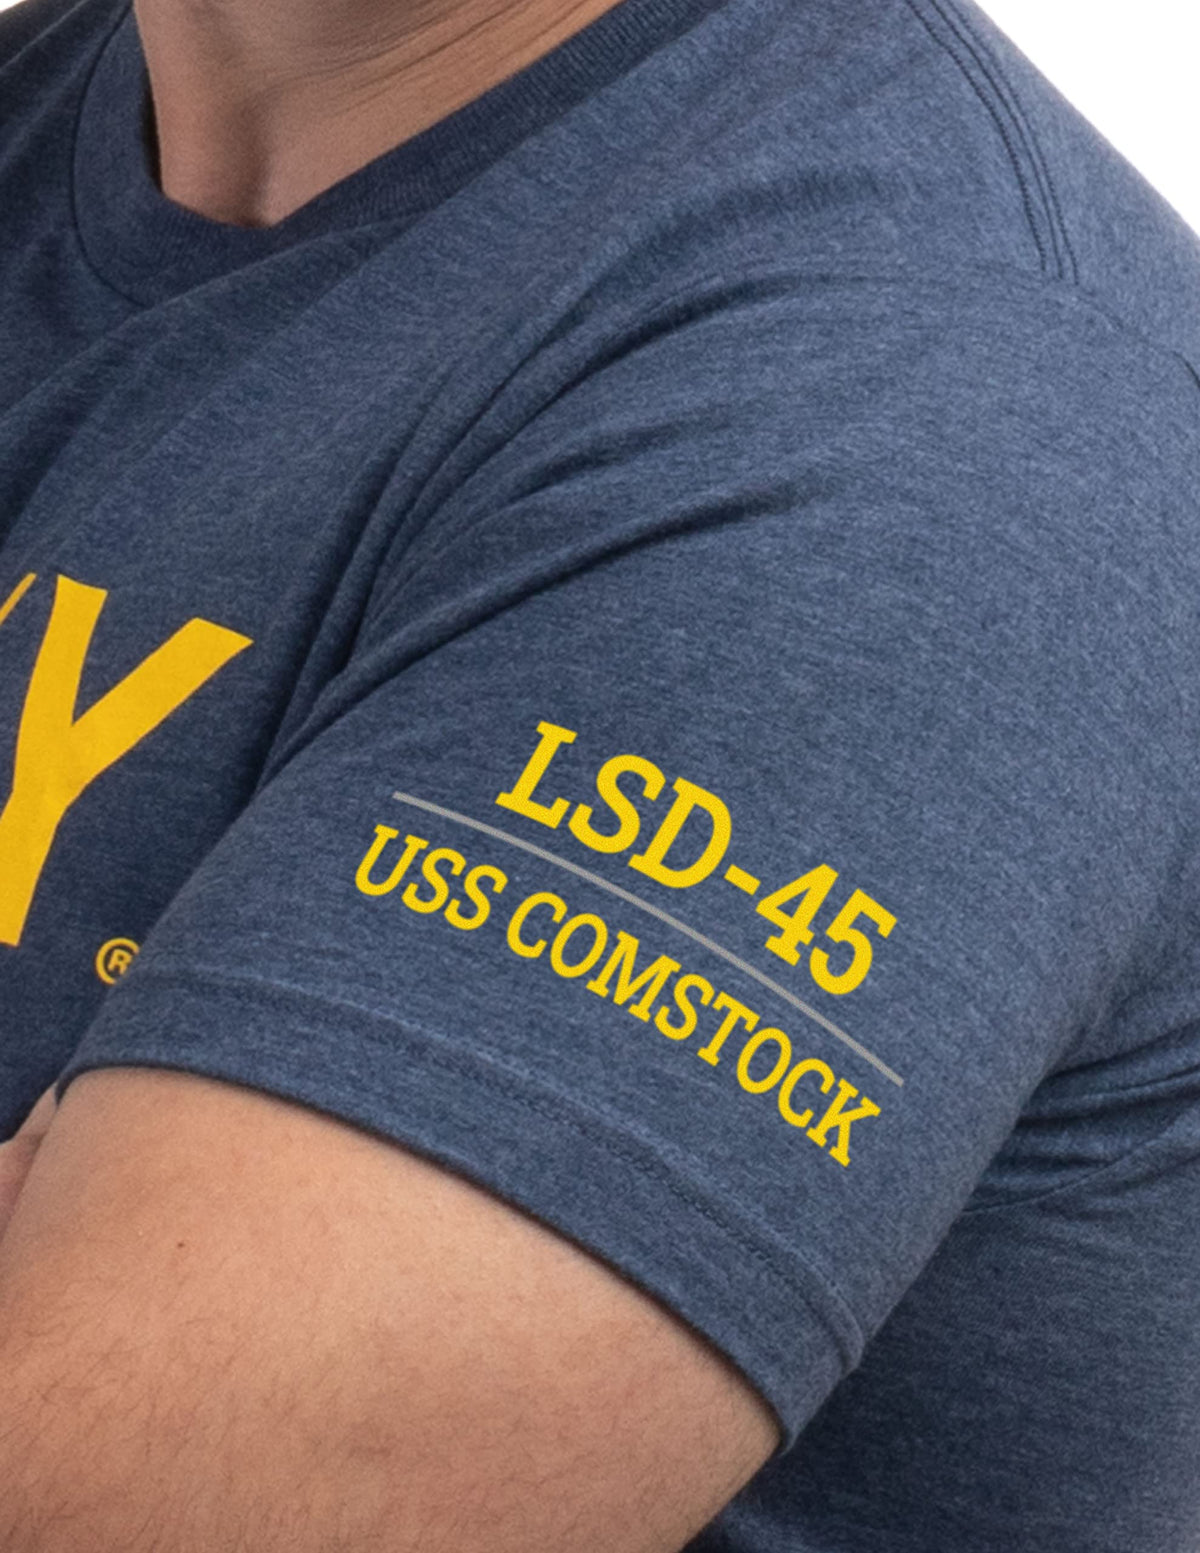 USS Comstock, LSD-45 | U.S. Navy Sailor Veteran USN United States Naval T-shirt for Men Women